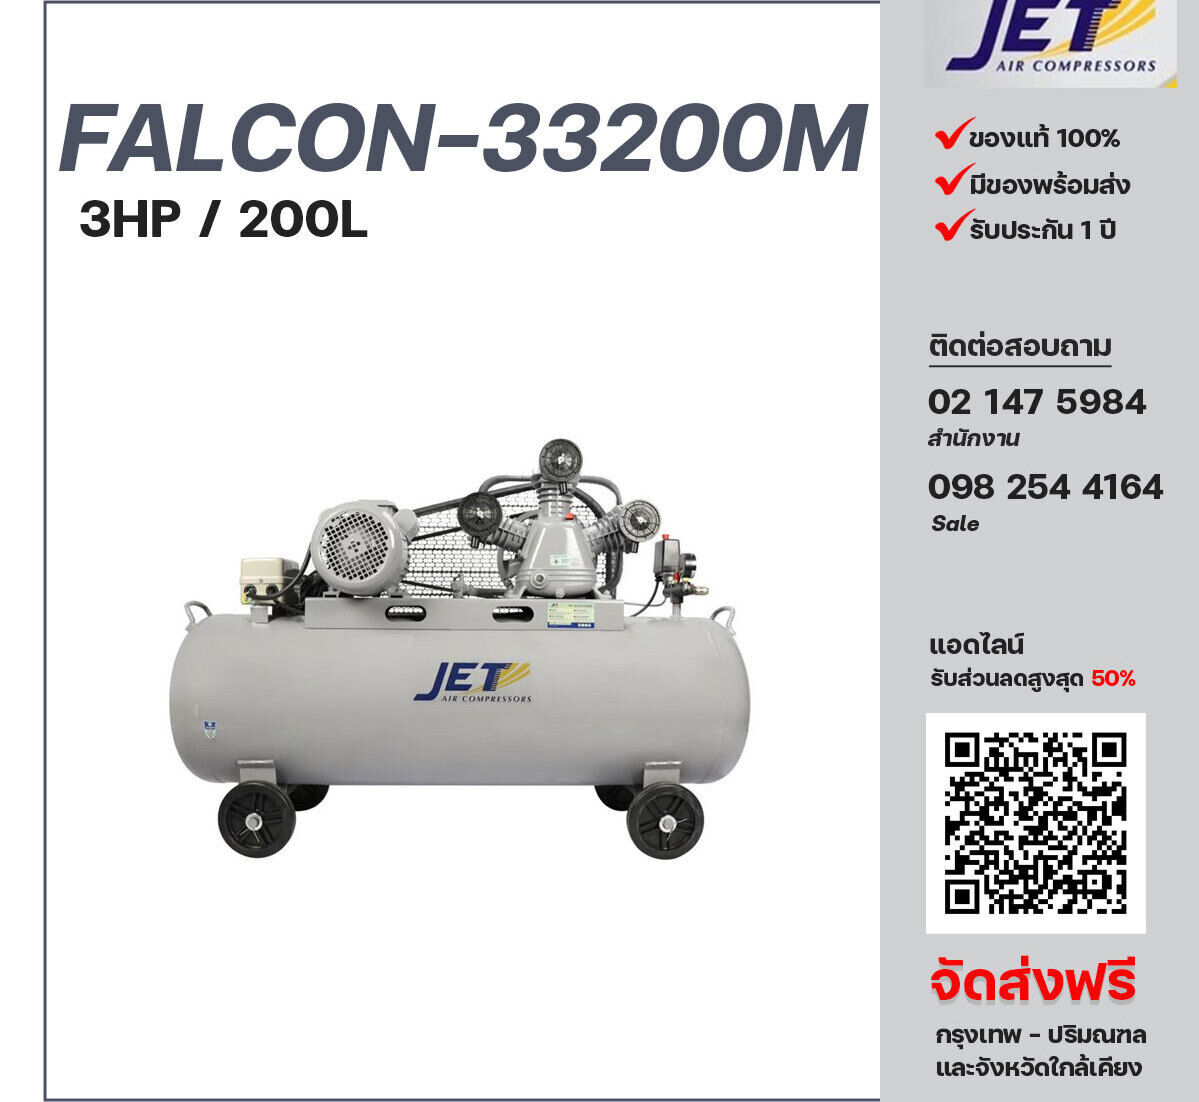 ปั๊มลมสายพาน JET ขนาด 3 แรงม้า รุ่น FALCON-33200M ไฟฟ้า 220V มอเตอร์ 4 แรงม้า ไฟฟ้า 220 โวลต์ ถังเก็บลมขนาด 200 ลิตร  รับประกัน 1 ปี ตามเงื่อนไขบริษัทผู้ผลิต